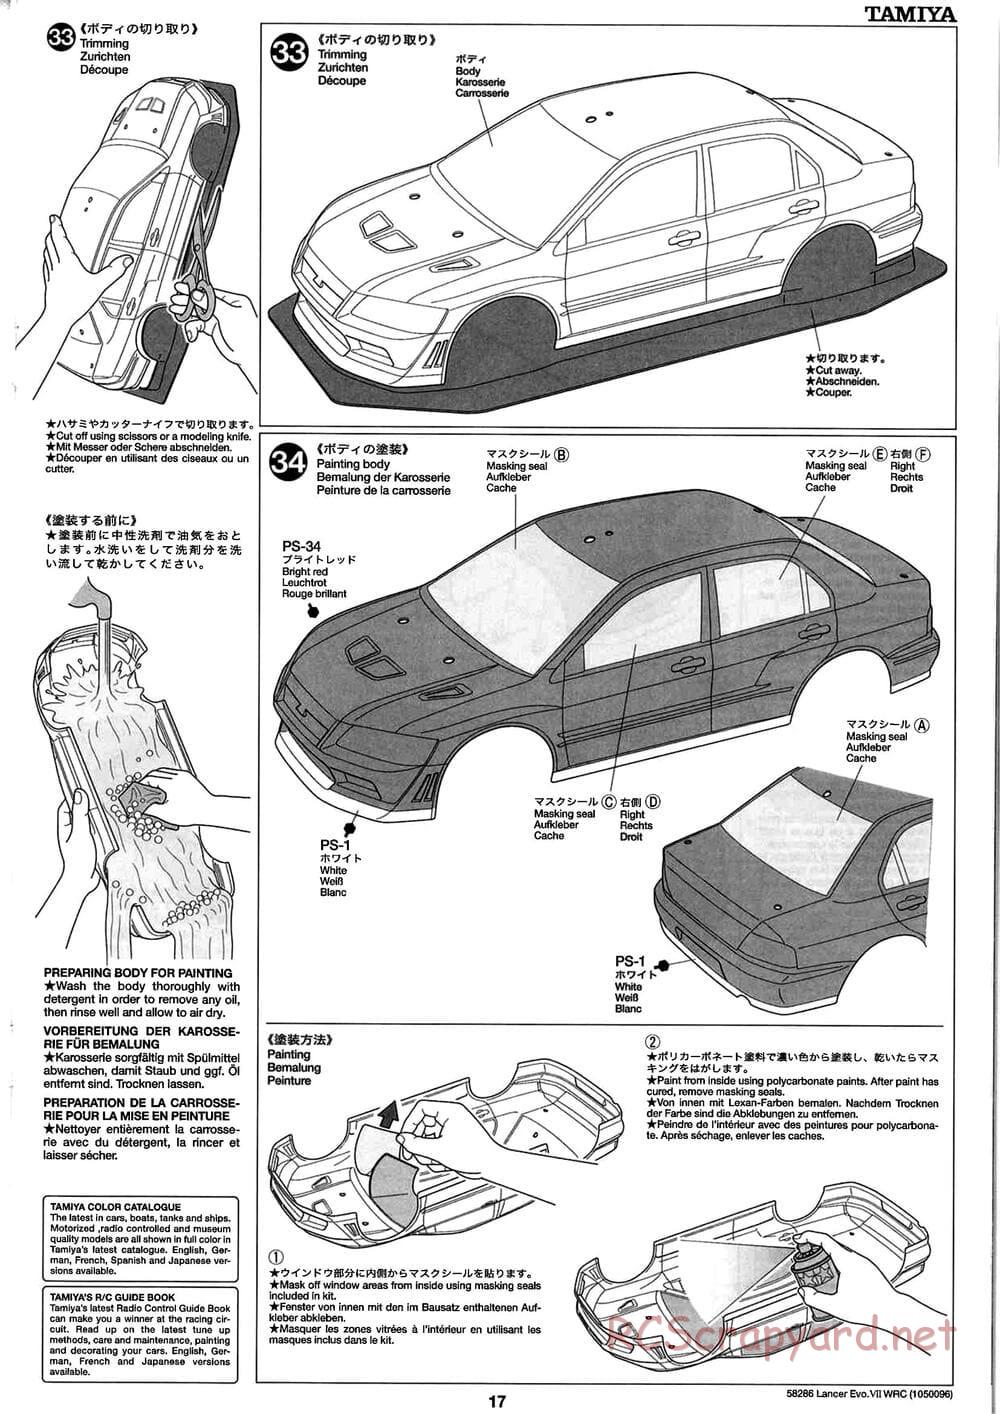 Tamiya - Mitsubishi Lancer Evolution VII WRC - TB-01 Chassis - Manual - Page 17